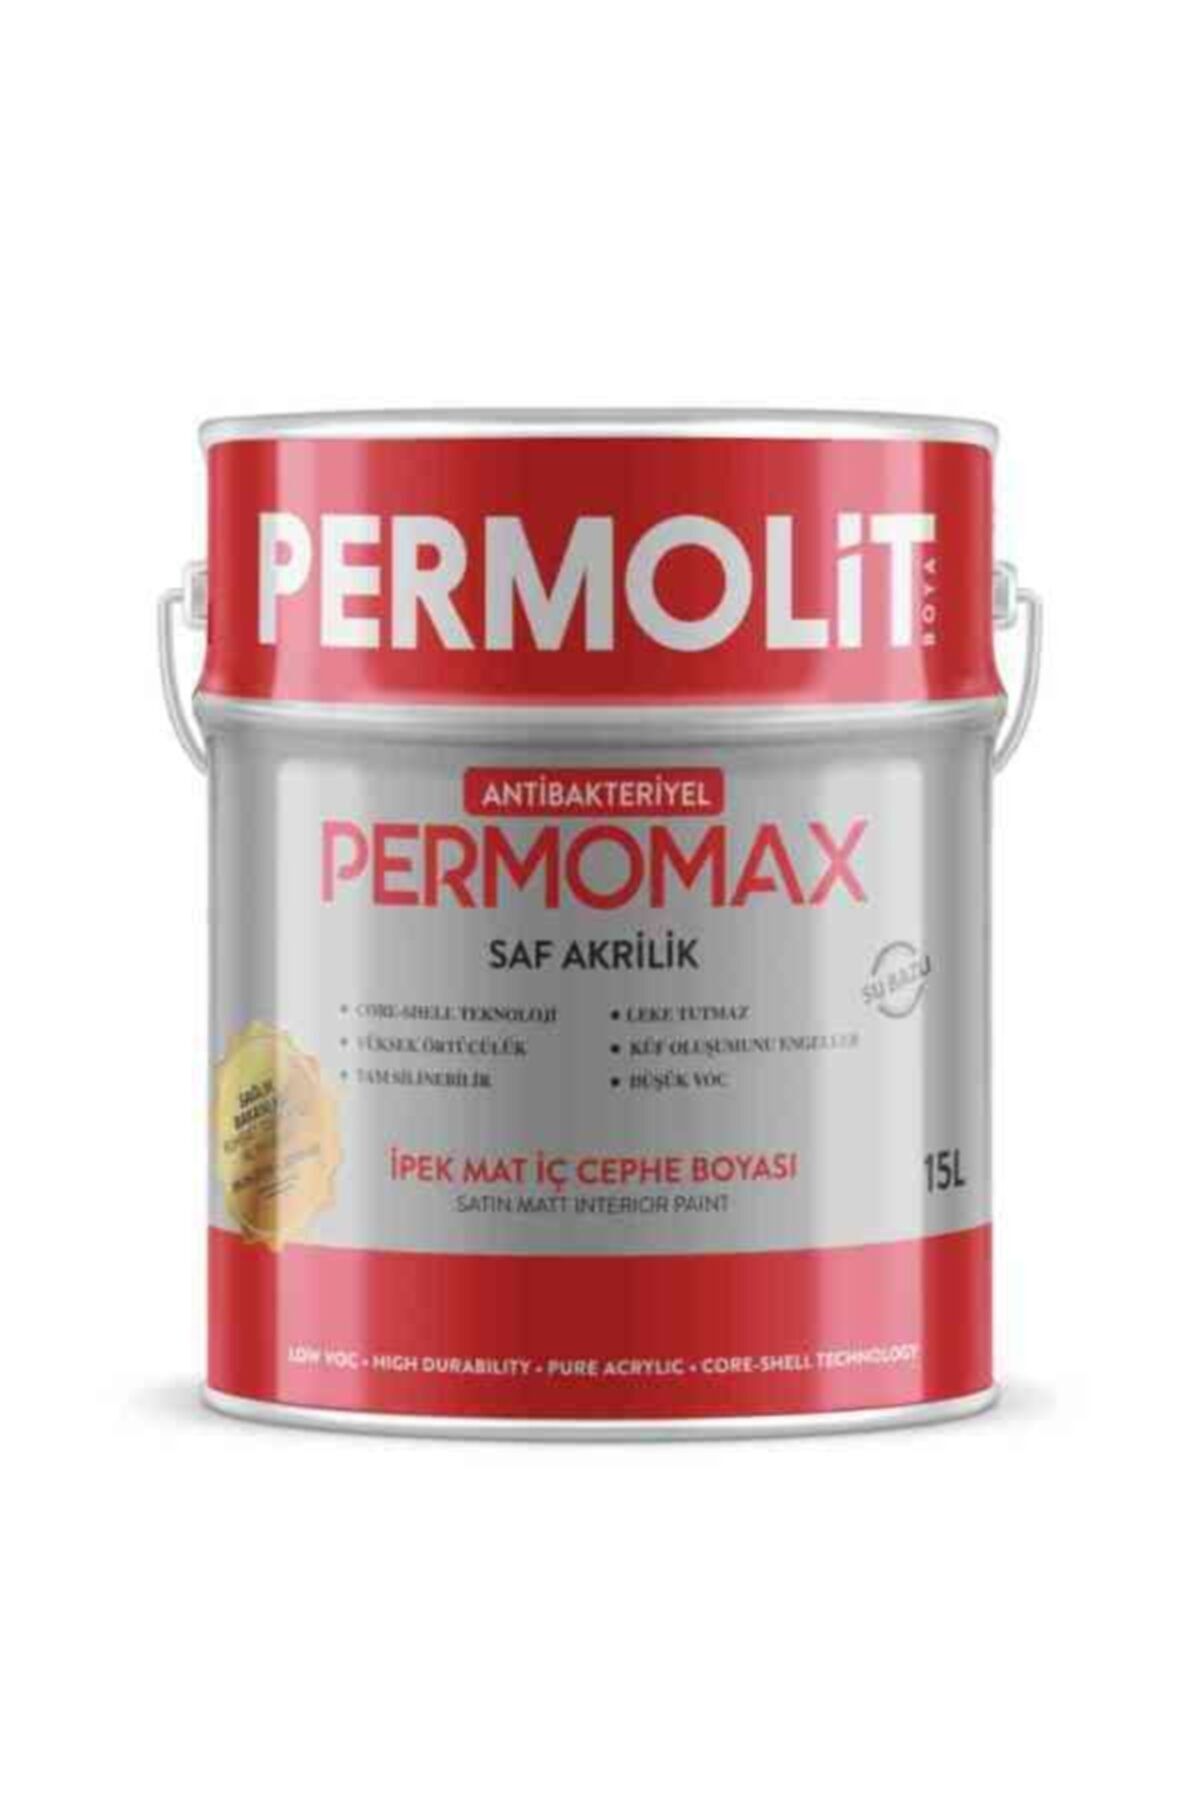 Permolit Permomax Antibakteriyel Ipek Mat Iç Cephe Boyası 20kg - Sakız